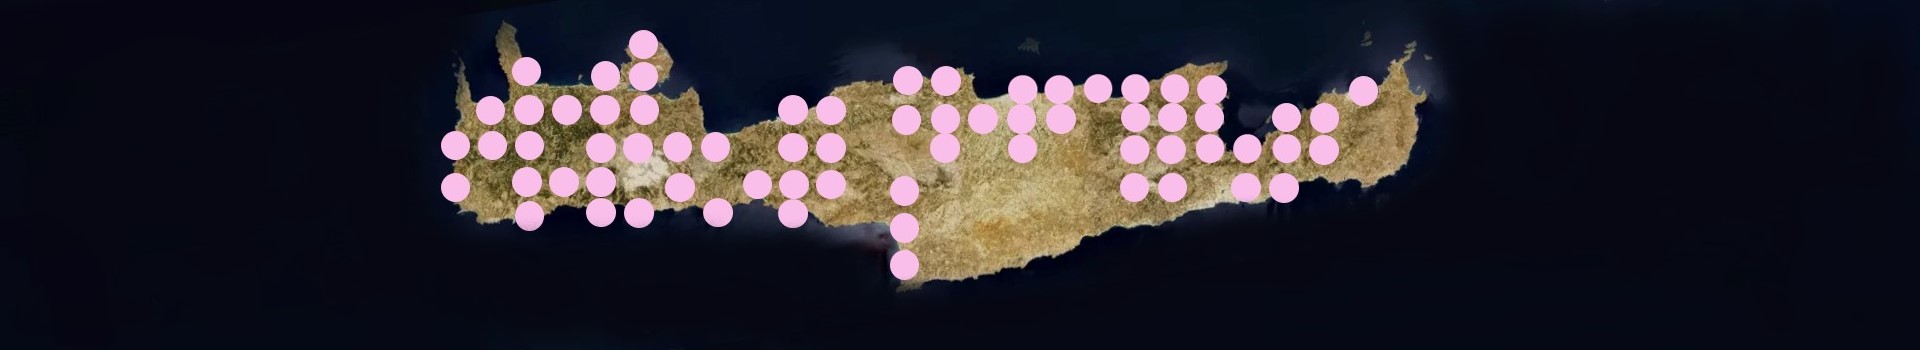 *based on http://www.pamperis.gr/THE_BUTTERFLIES_OF_GREECE/MAPS.html